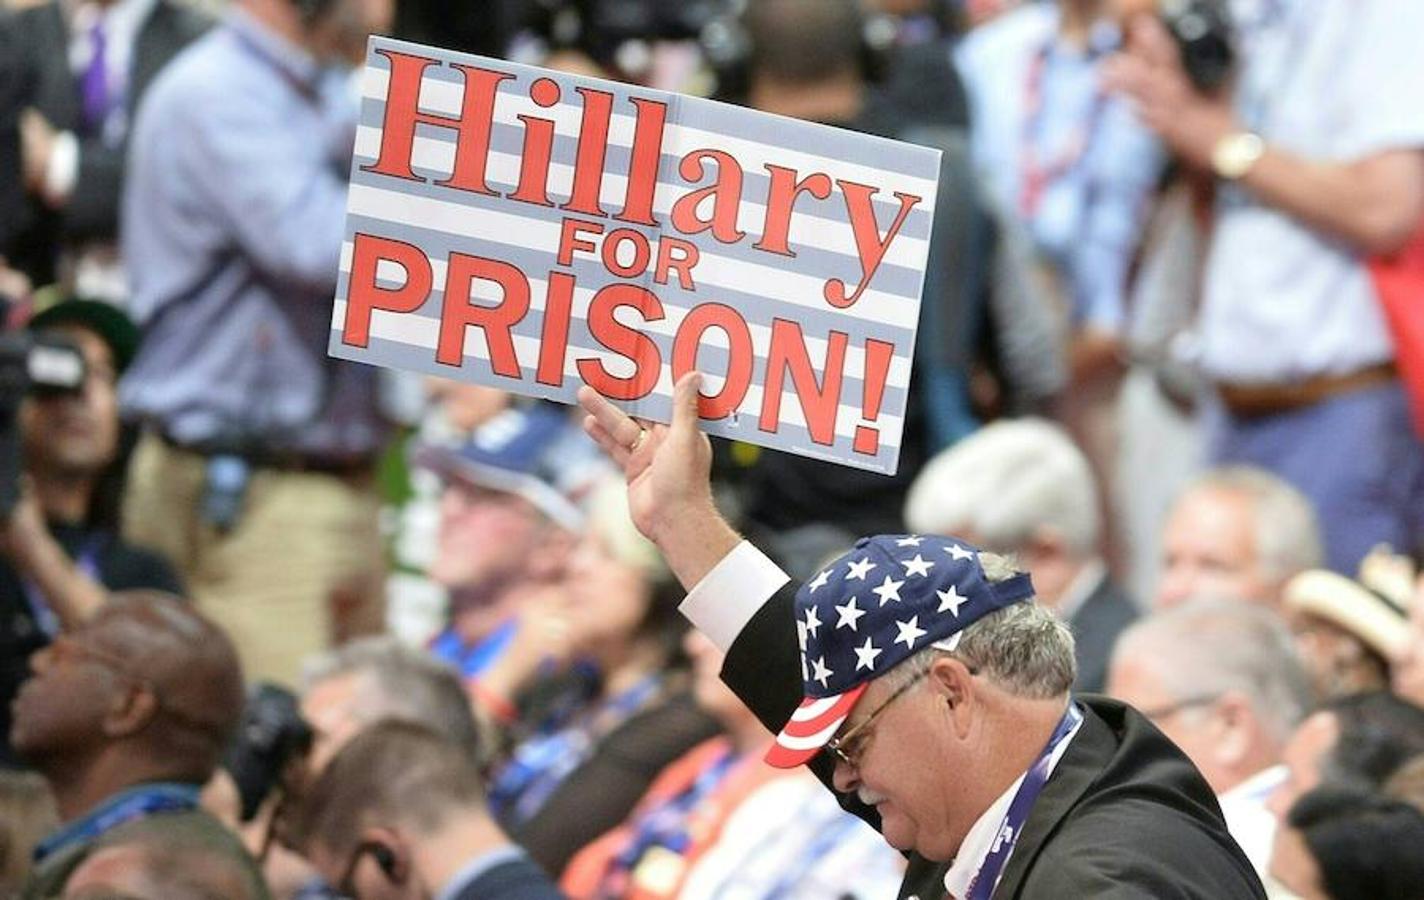 Partidarios de Trump durante la convención: «Hillary a prisión». 